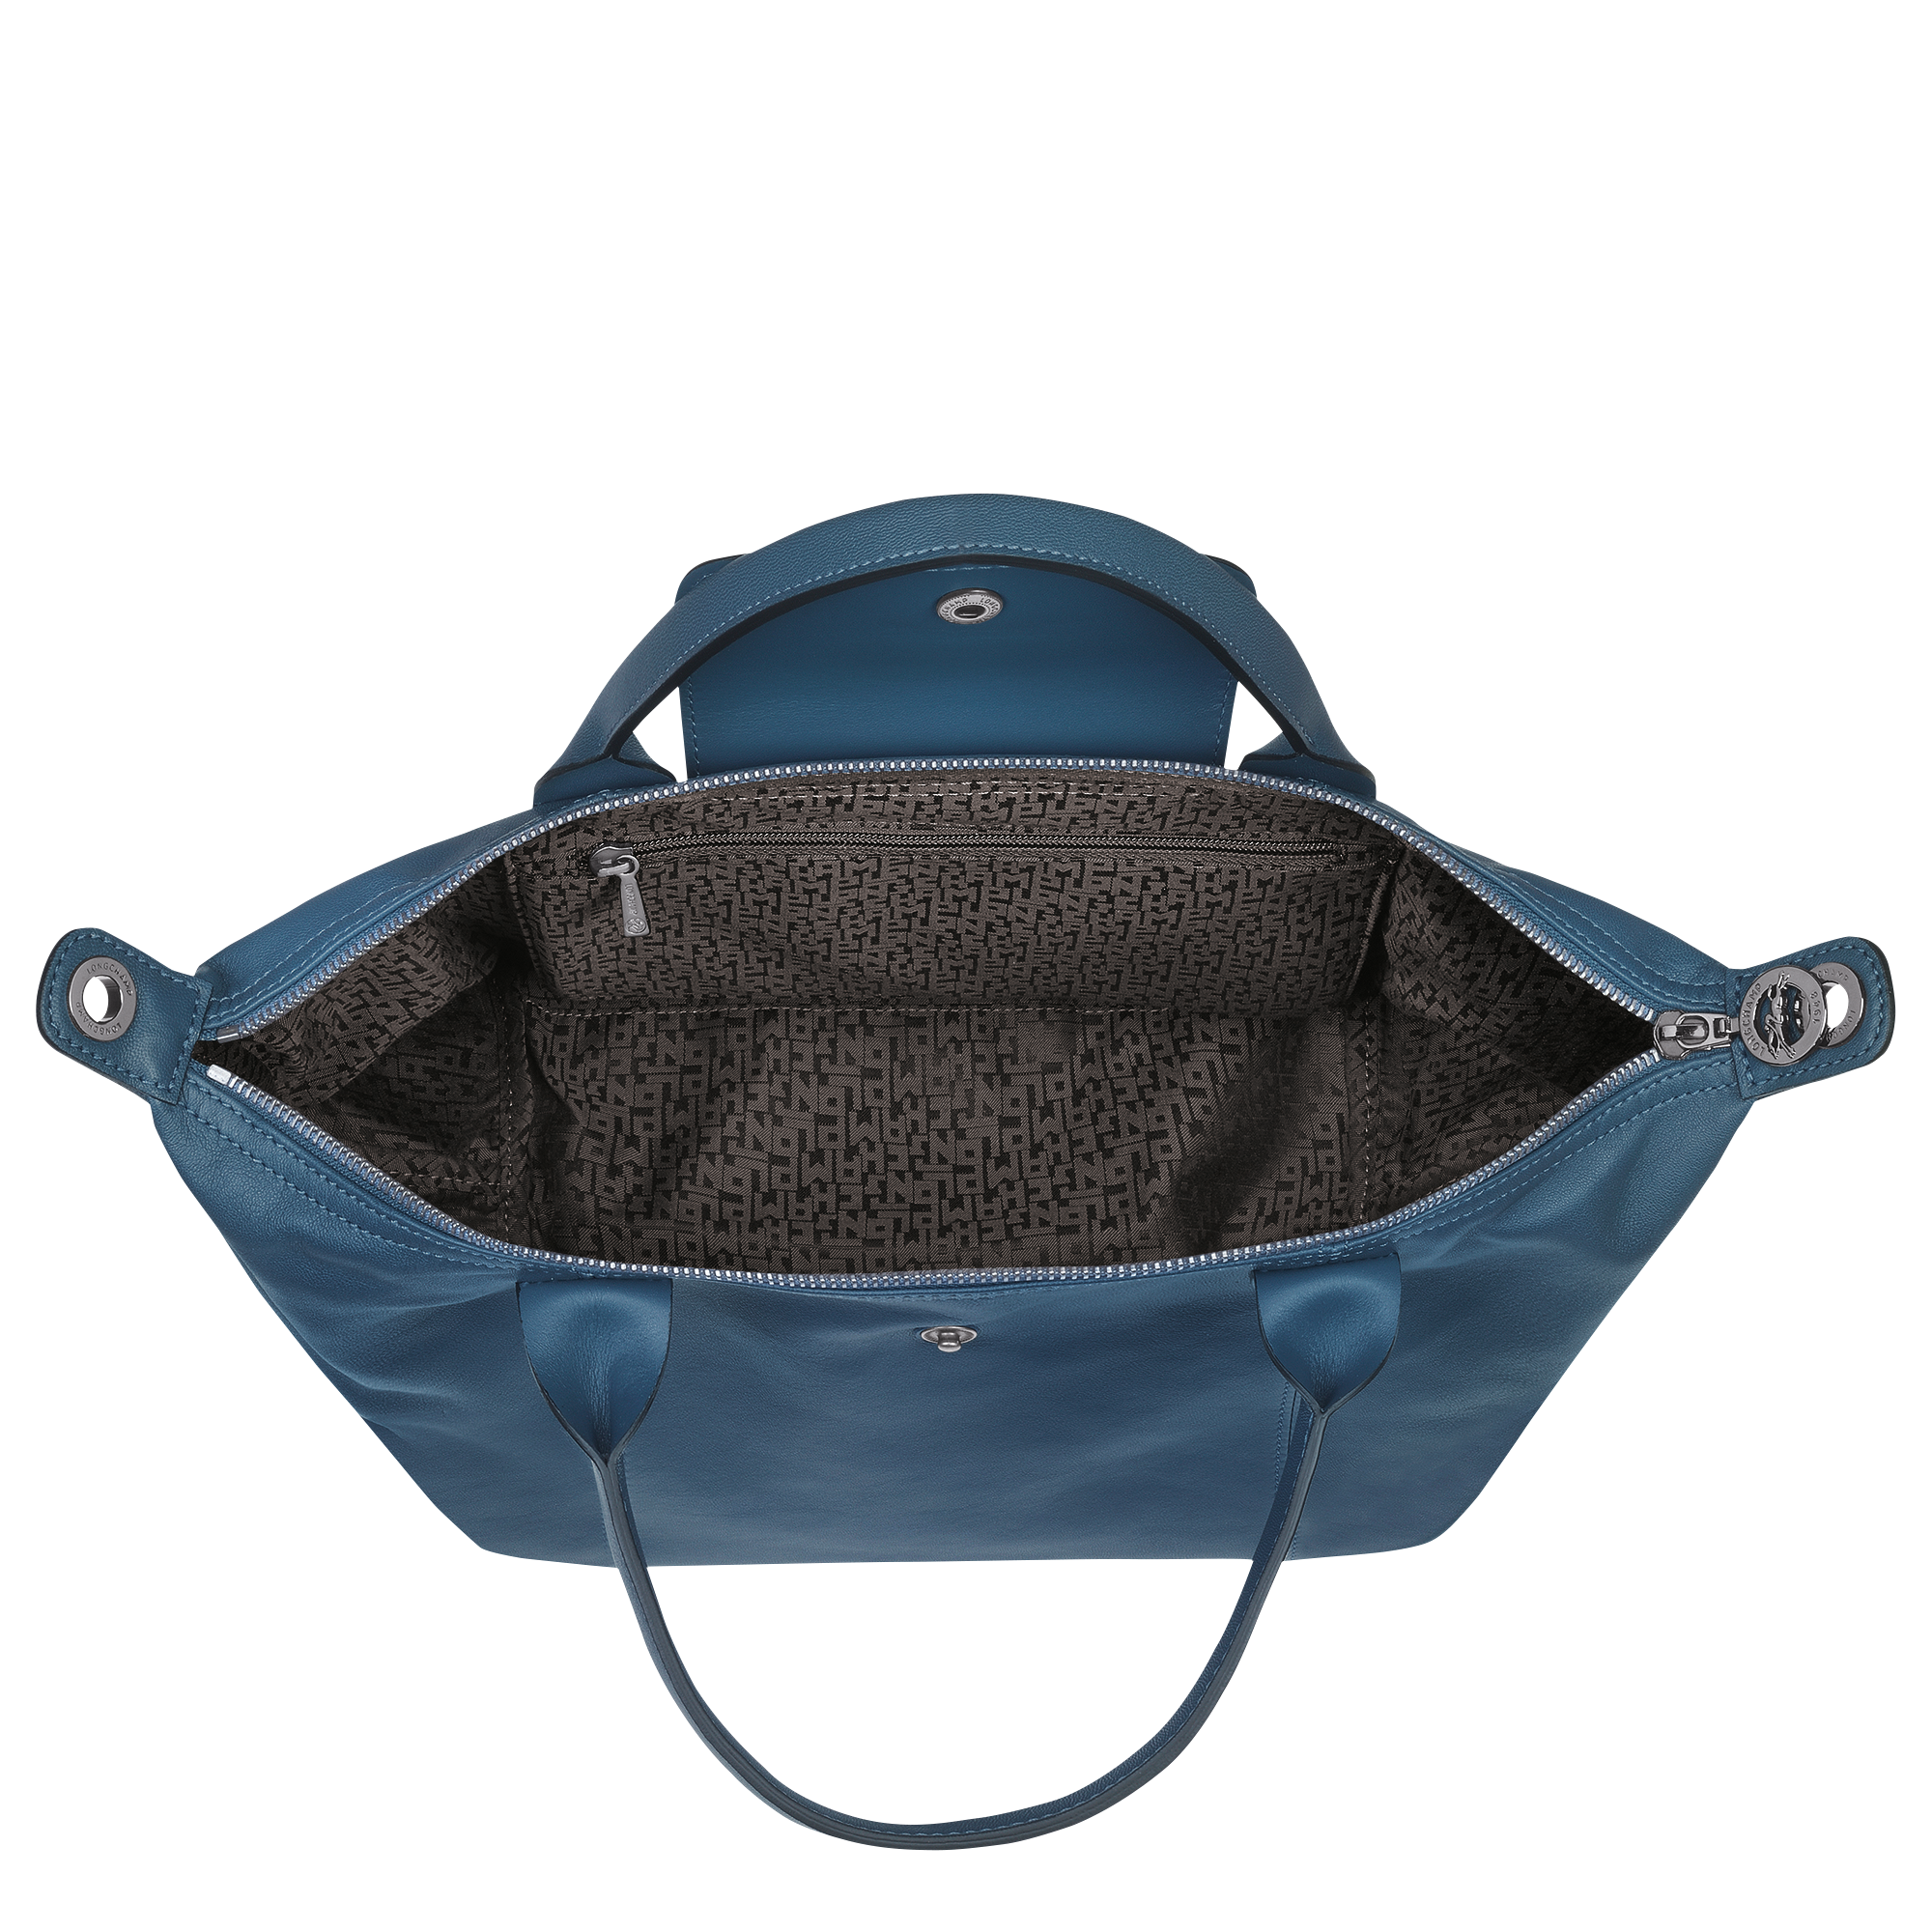 Le Pliage Cuir S Top handle bag Desert - Leather (L1512757526)